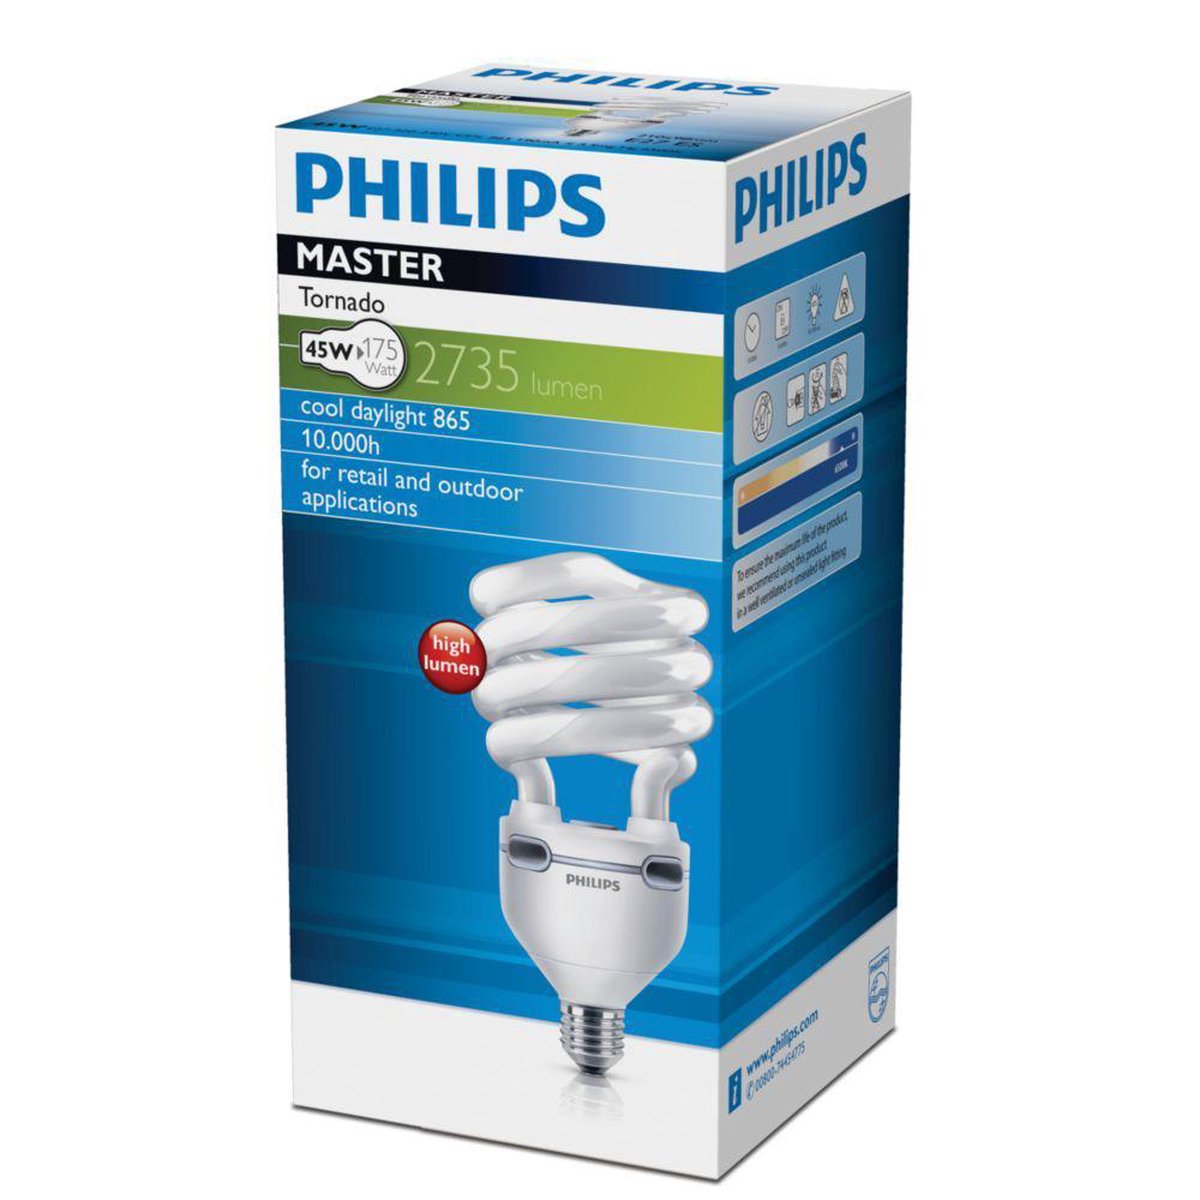 Philips Tornado ampoule spirale économique E27 8W